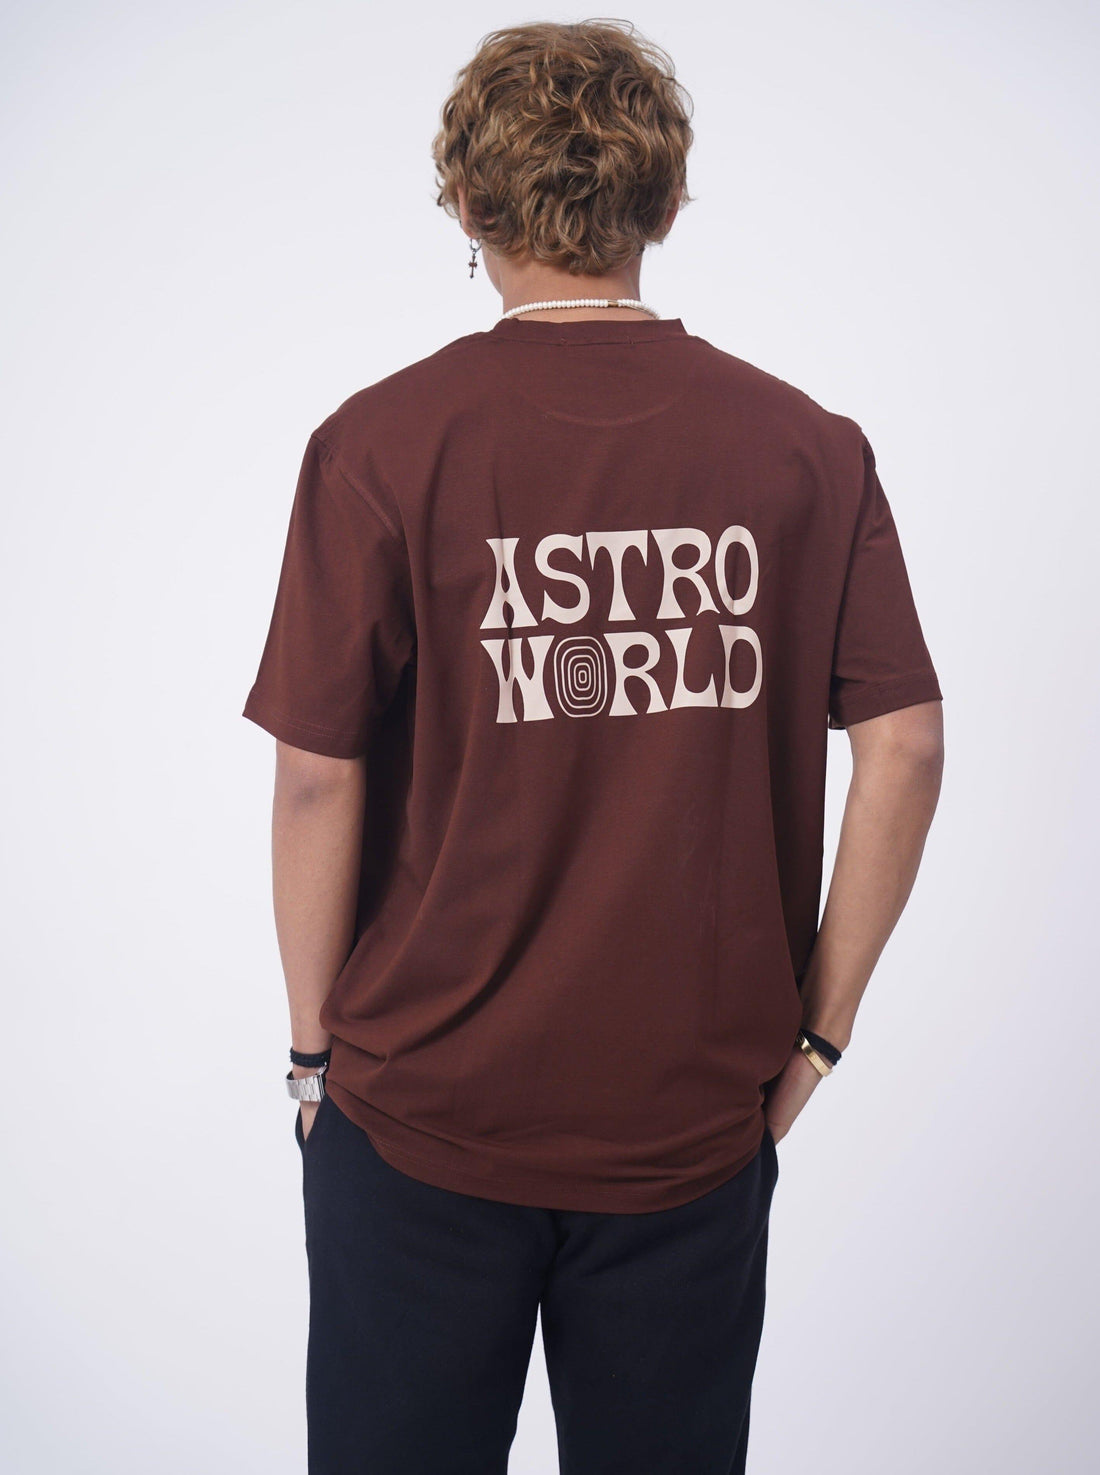 Travis Scott Astro World Oversized Tee (T-shirt) For Men Oversized T-shirt Burger Bae 